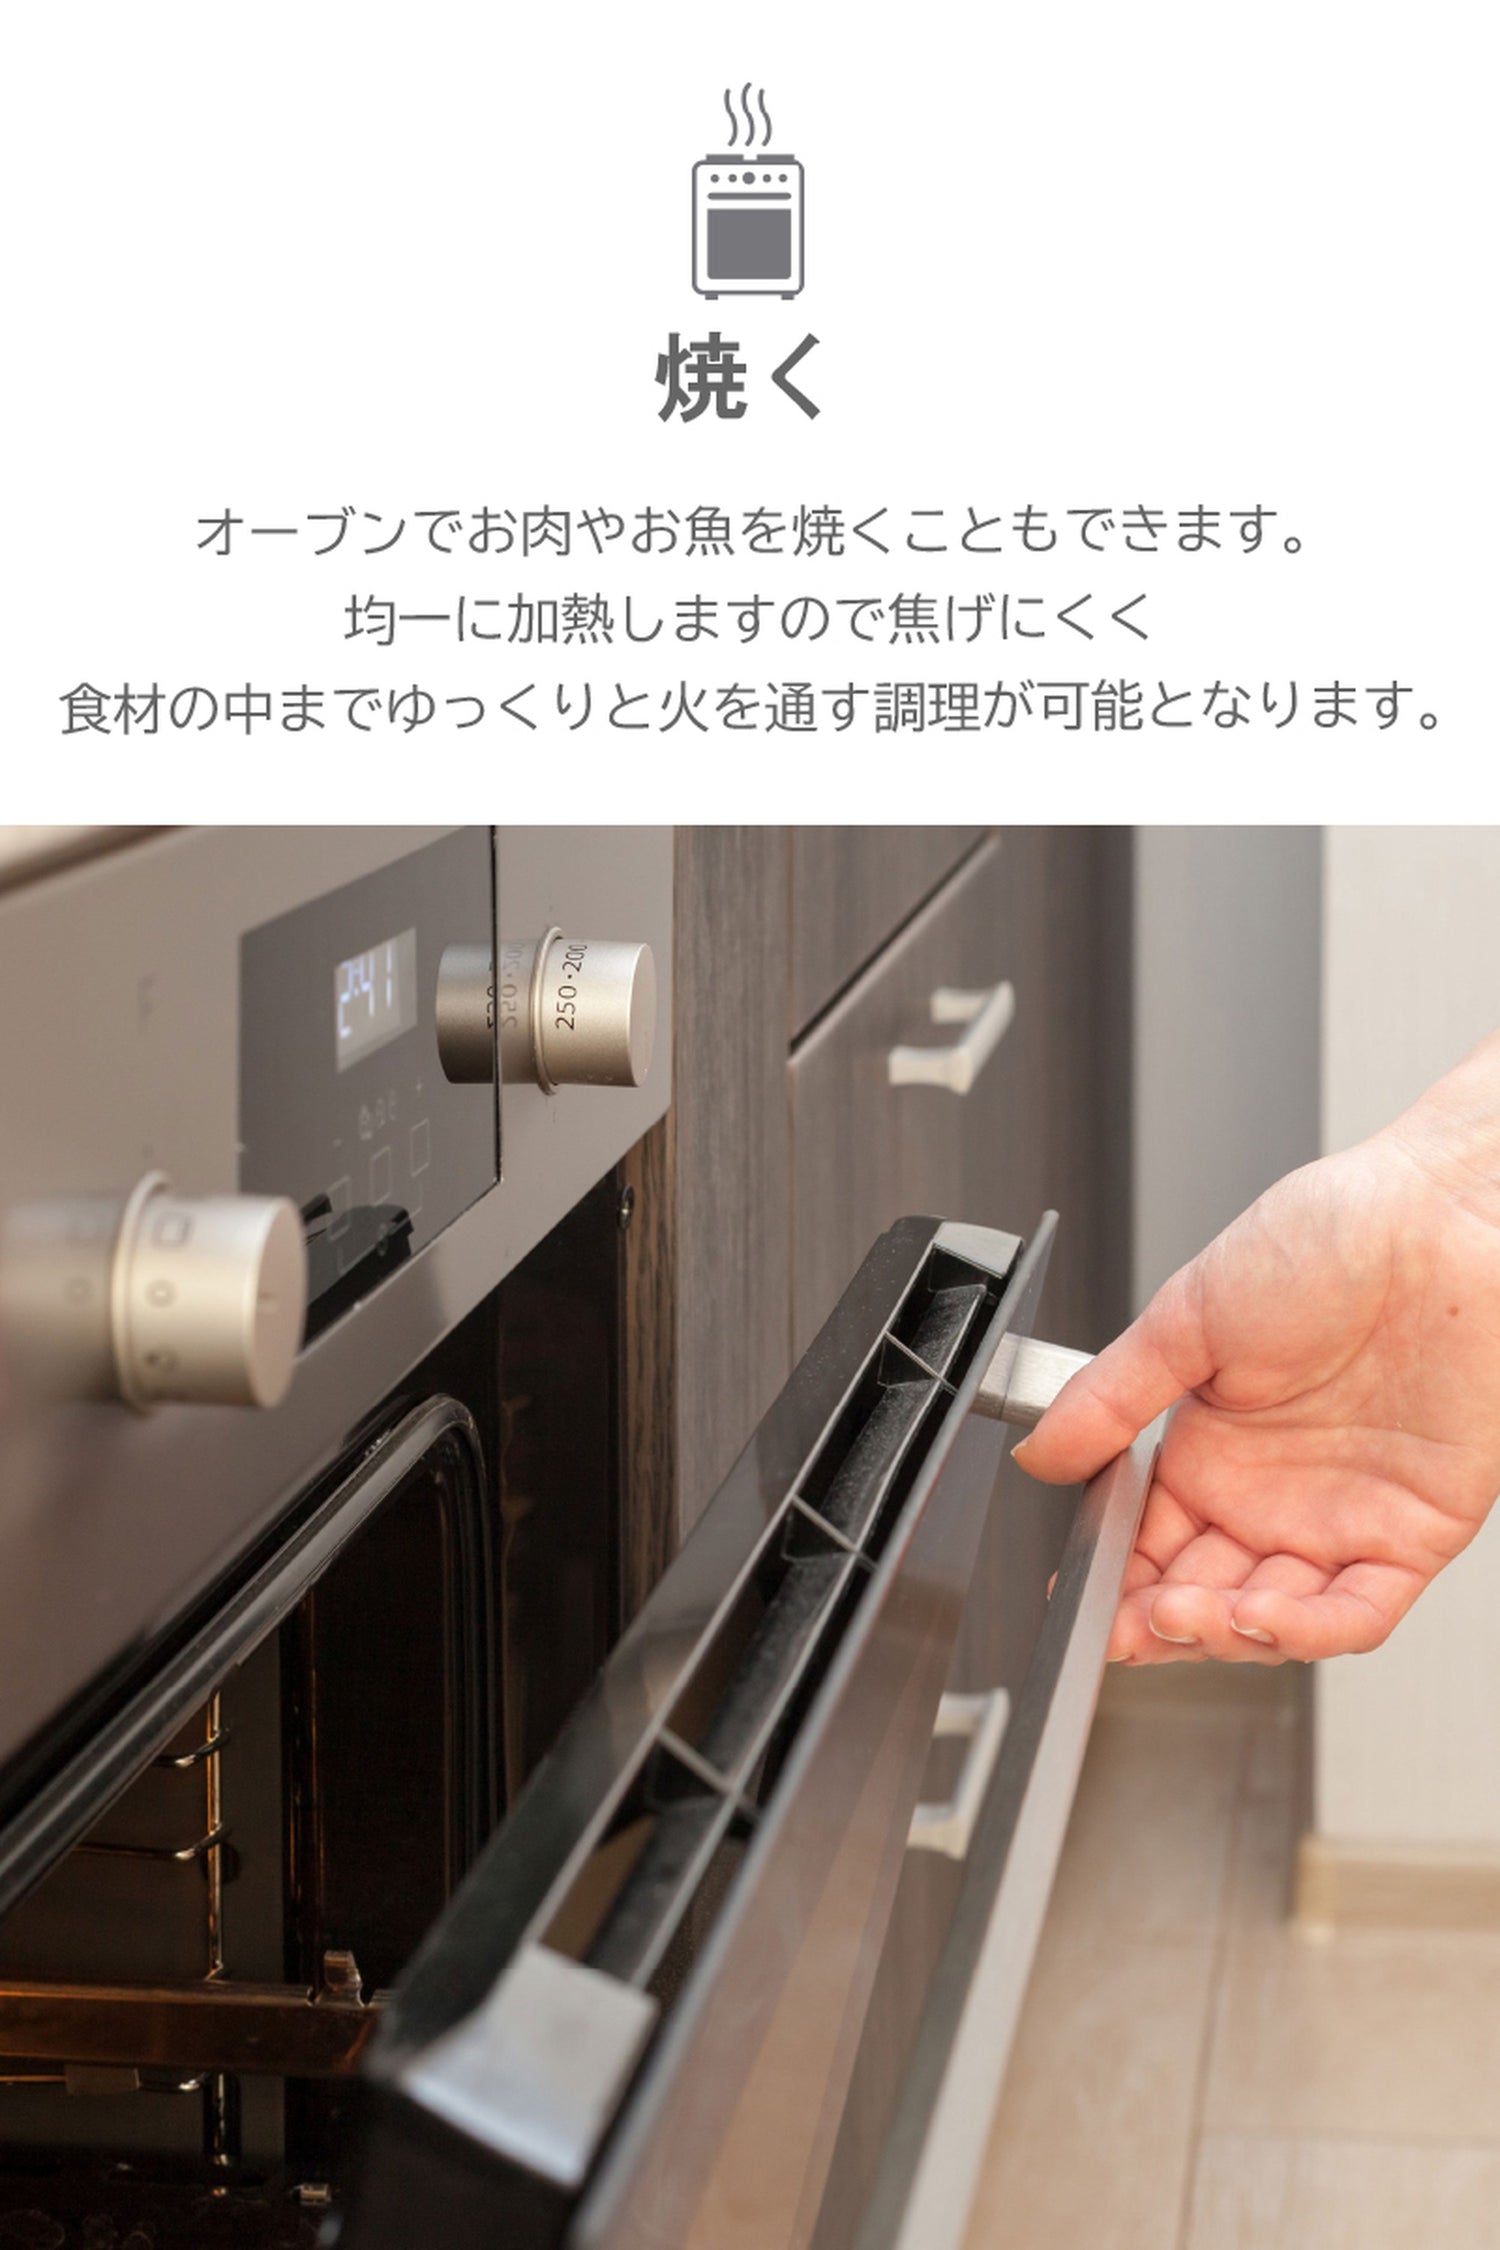 スタッシャー シリコンバッグ stasher 日本正規品 サンドイッチ Mサイズ ホリデーシリーズ 2色